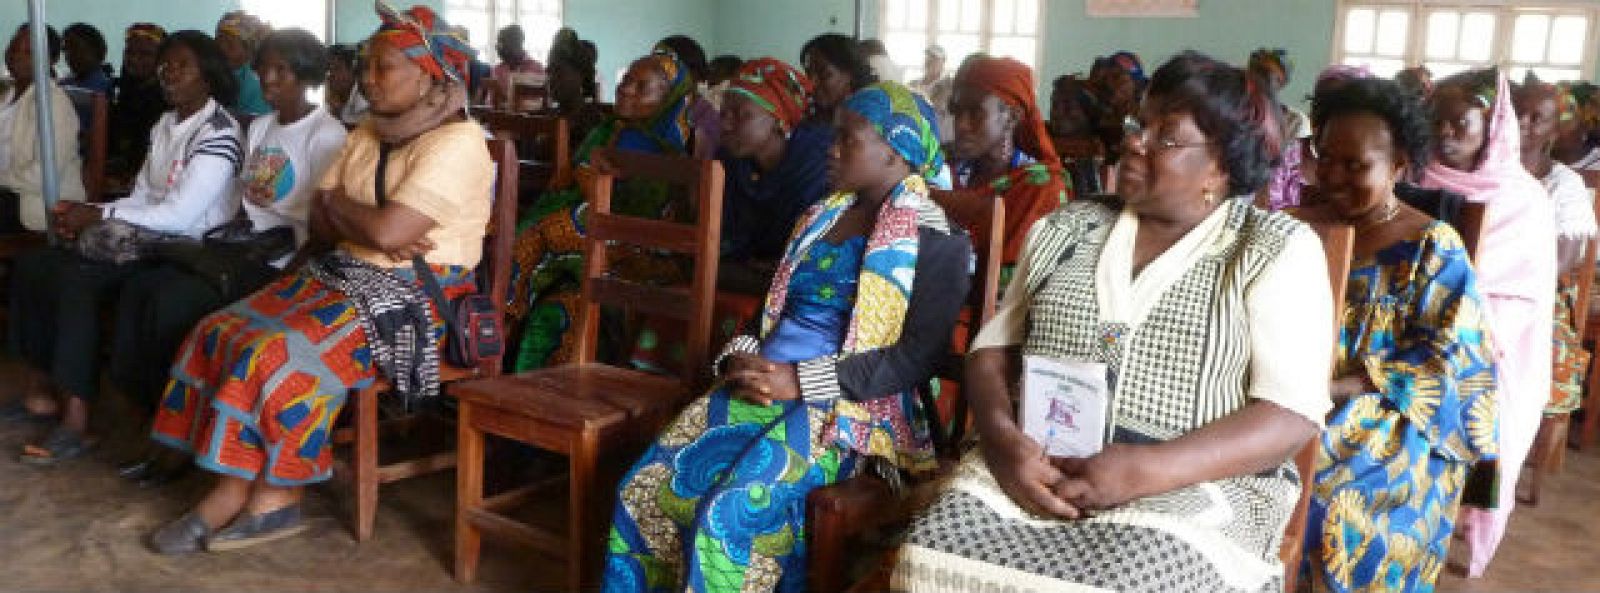 La formación de las mujeres rurales es muy importante para consolidar los cambios y promover el desarrollo